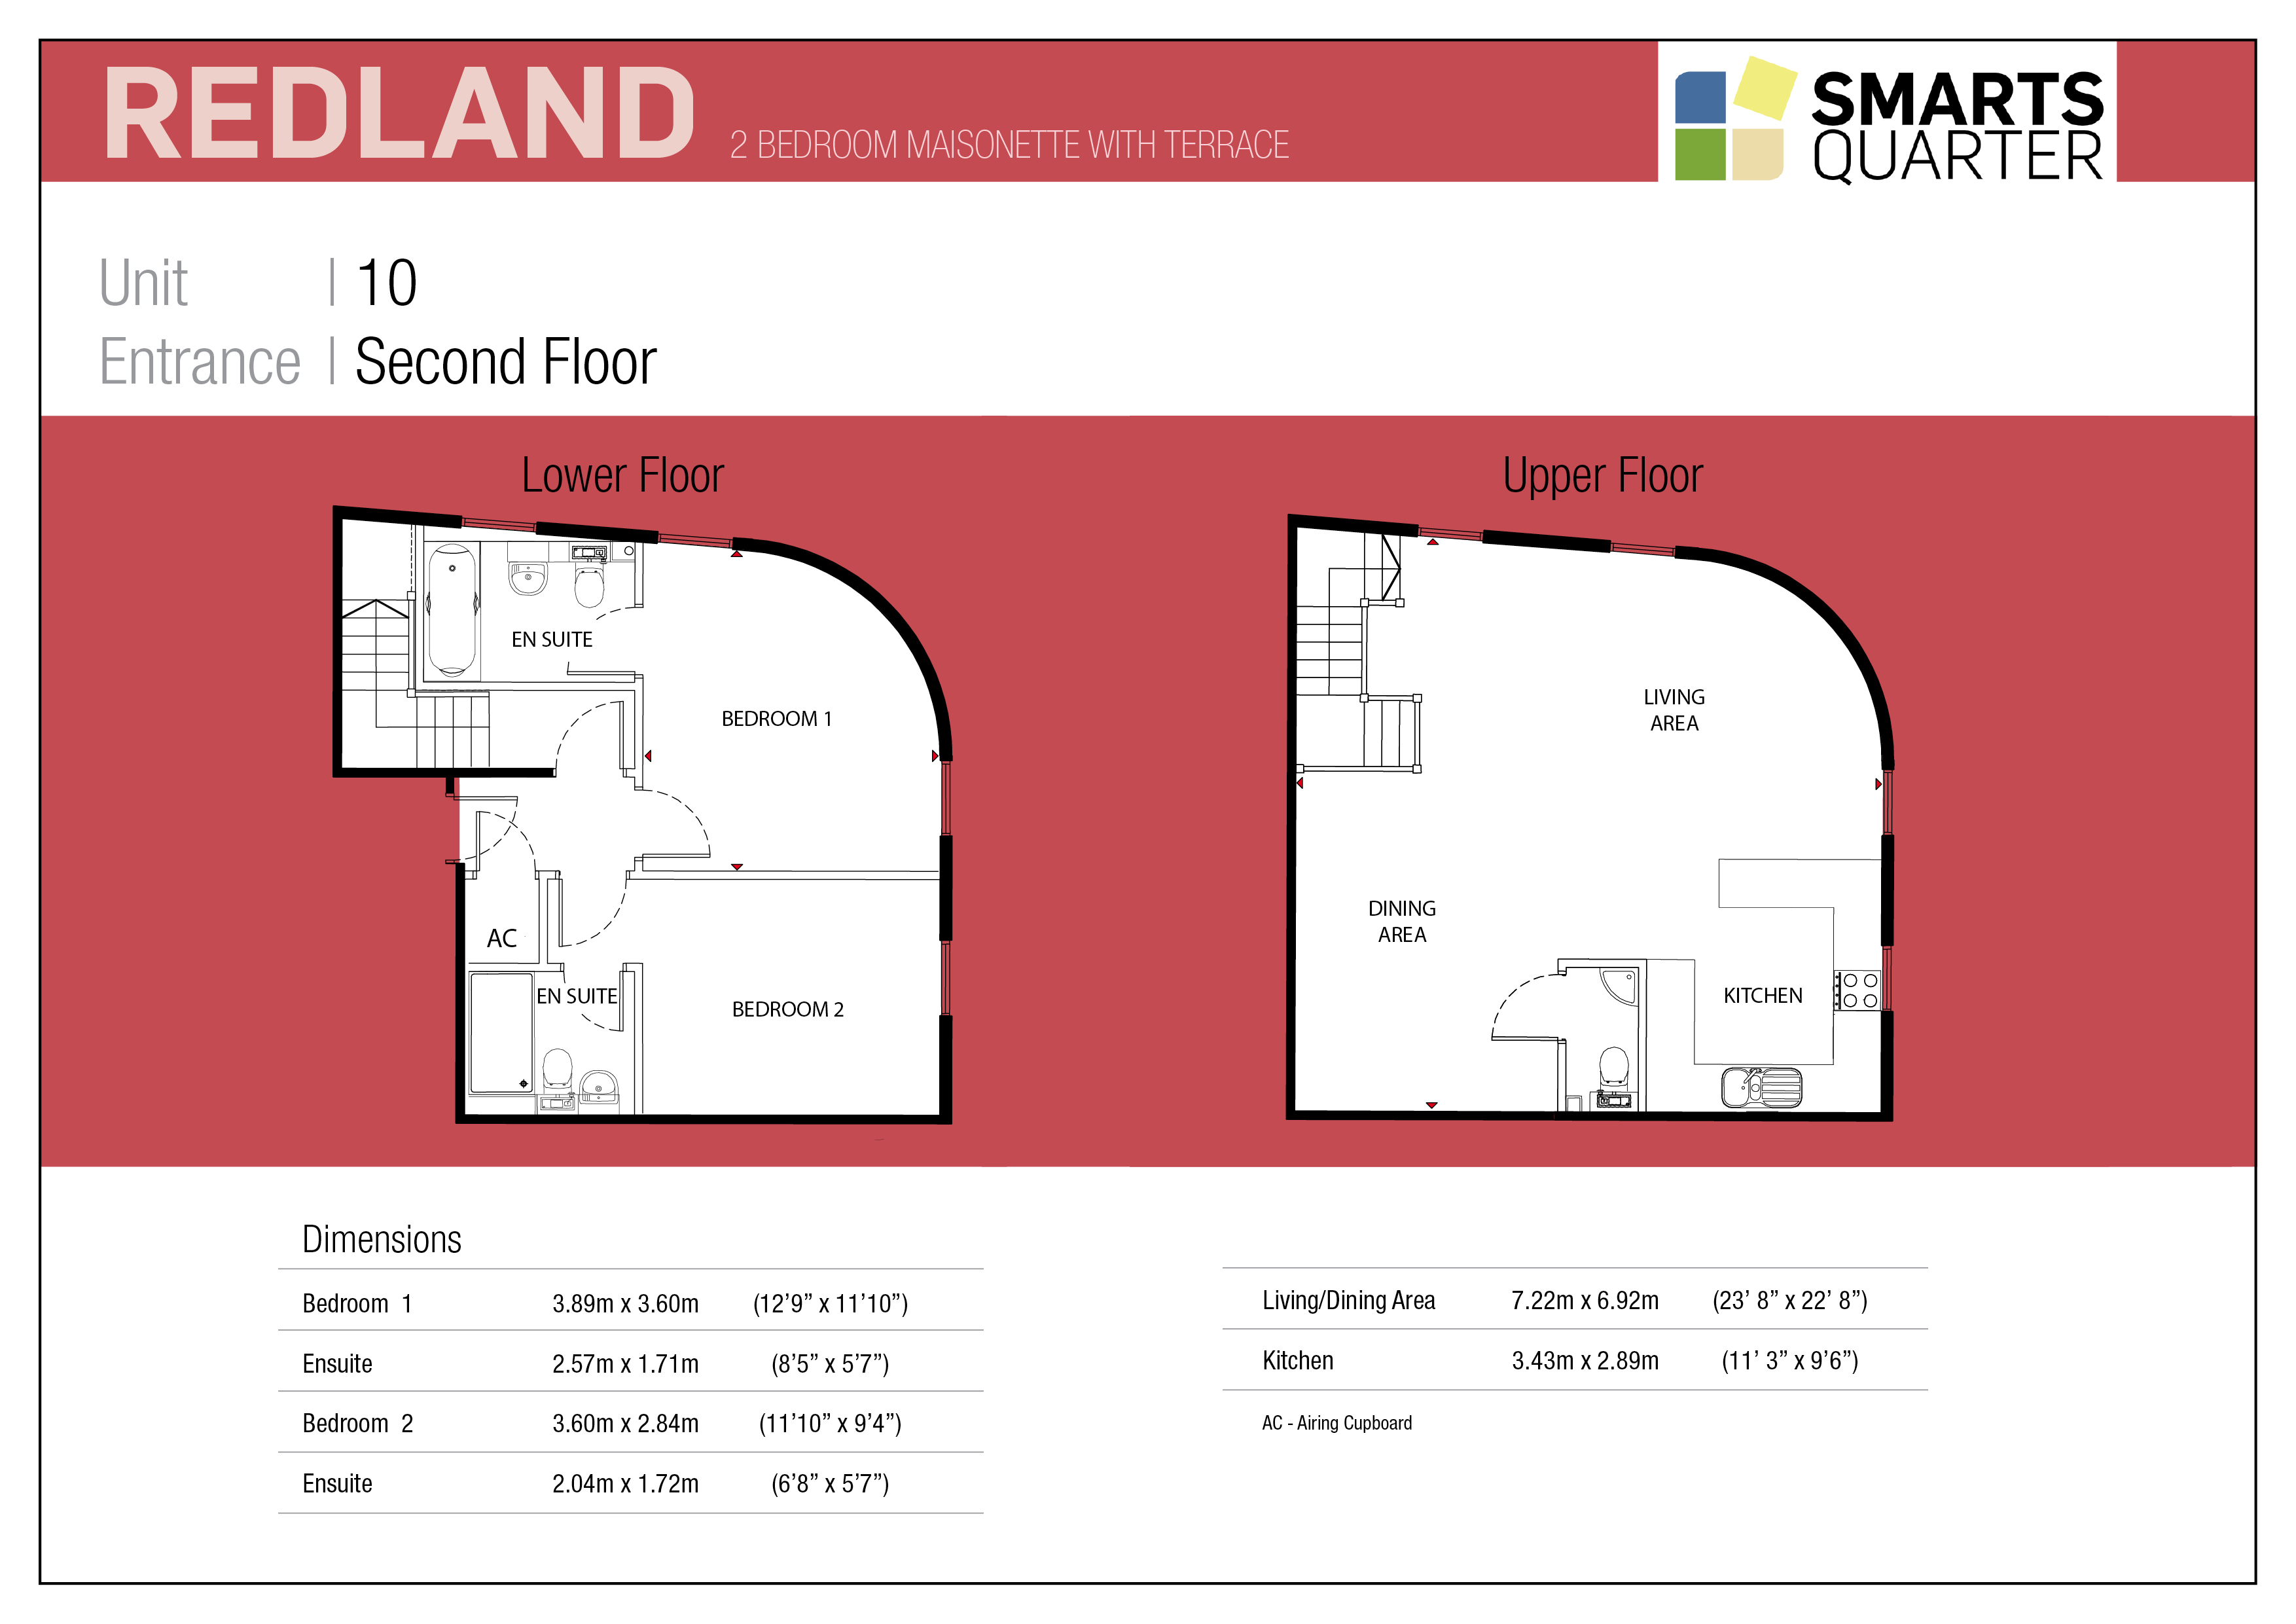 Smarts Quarter Development Floor Plan for the Redland Maisonette 